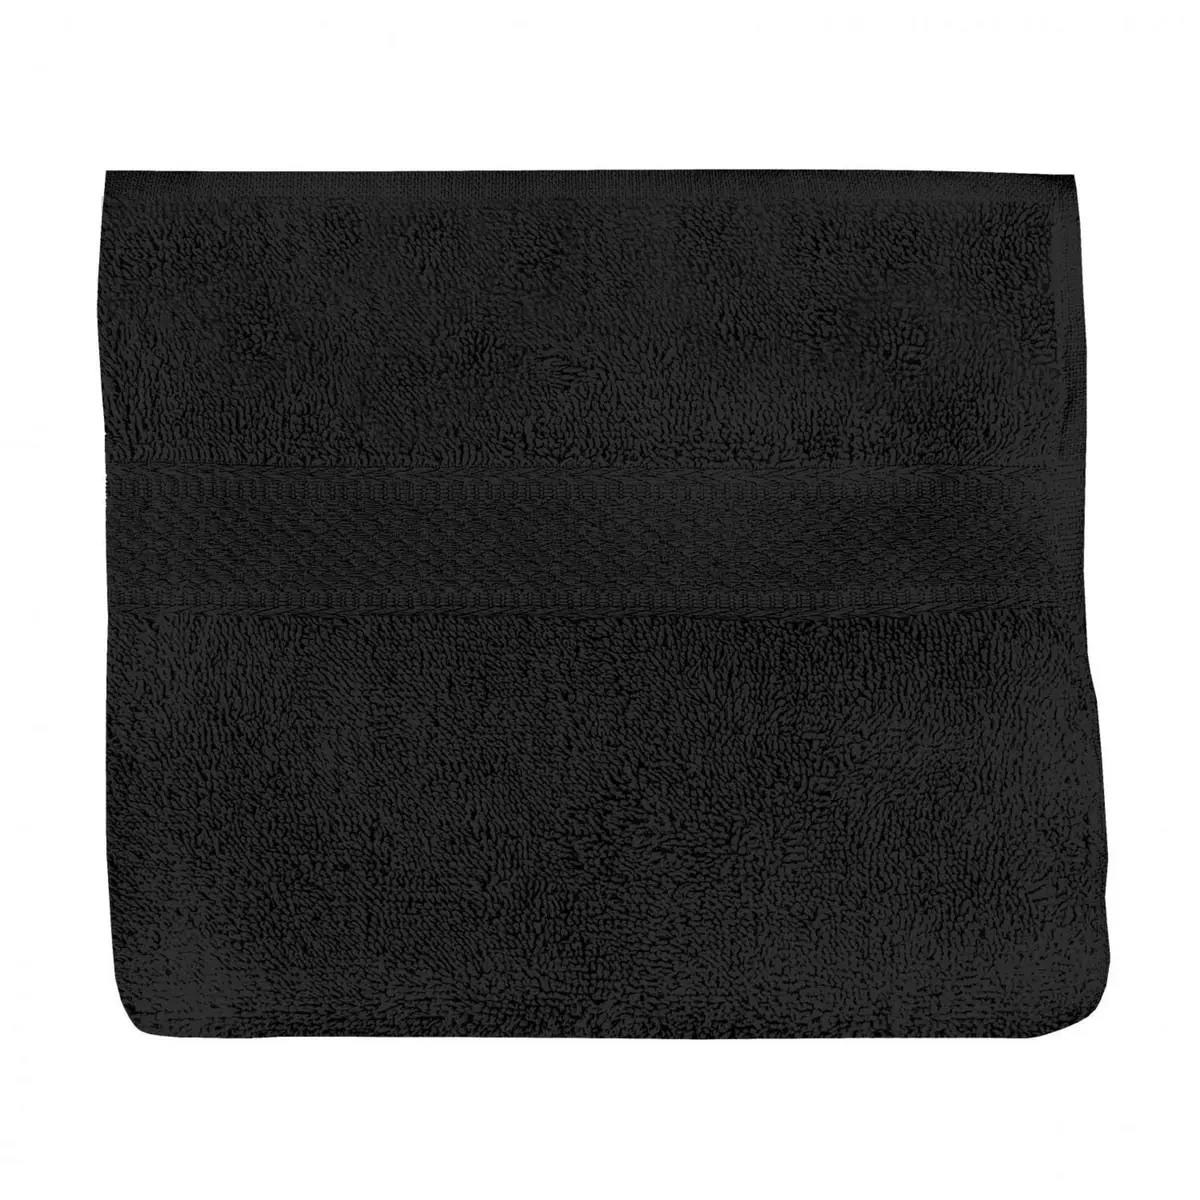 SOLEIL D'OCRE Serviette de toilette en coton 500 gr/m2 50x90 cm LAGUNE noir, par Soleil d'ocre